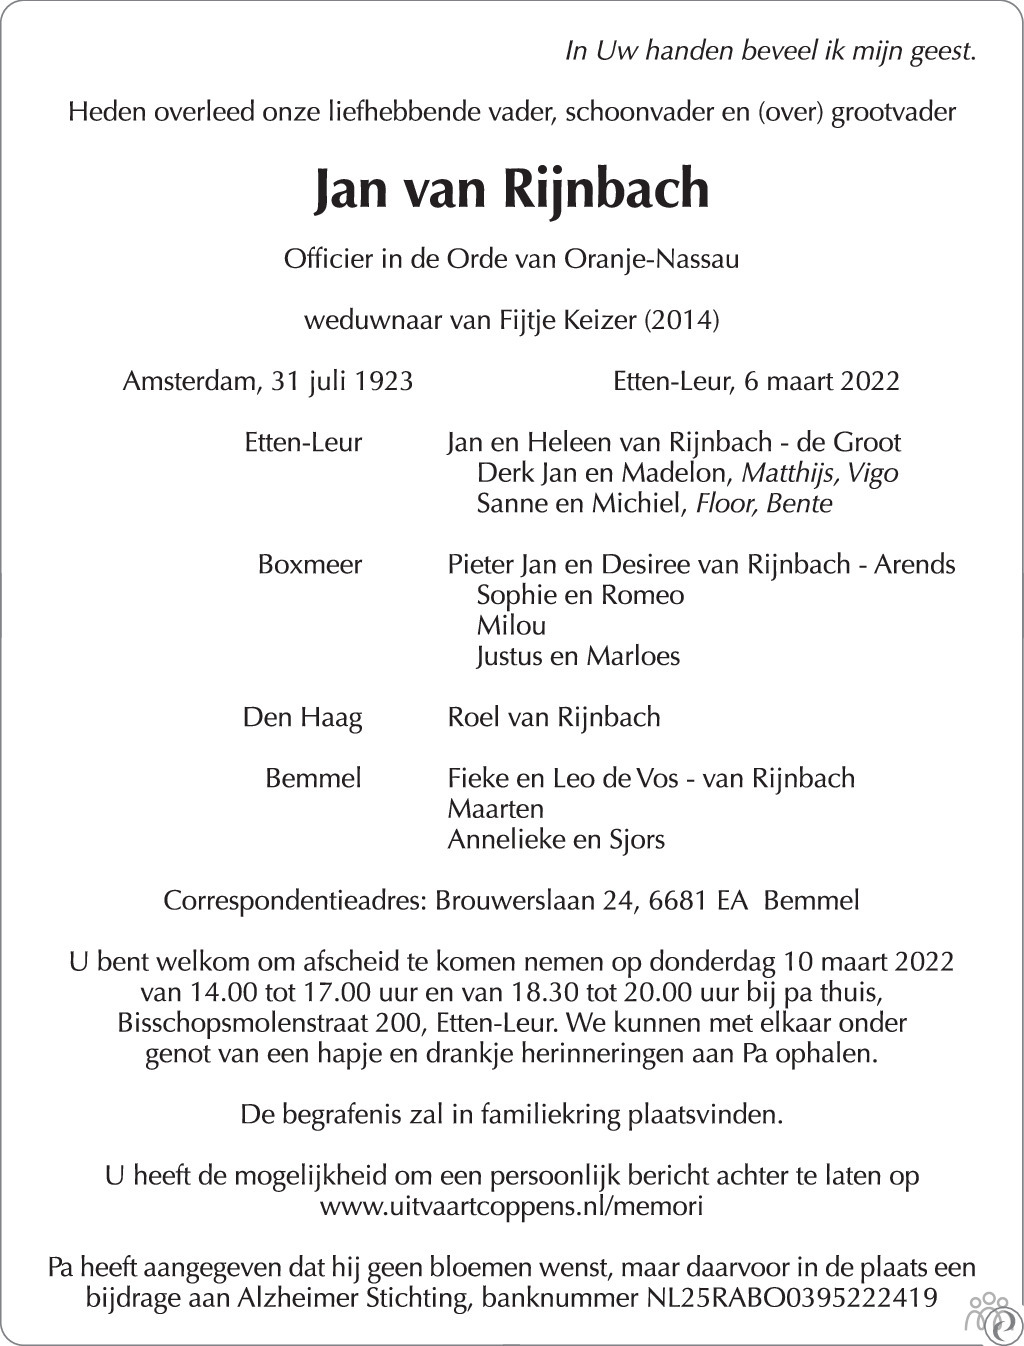 Overlijdensbericht van Jan van Rijnbach in Trouw